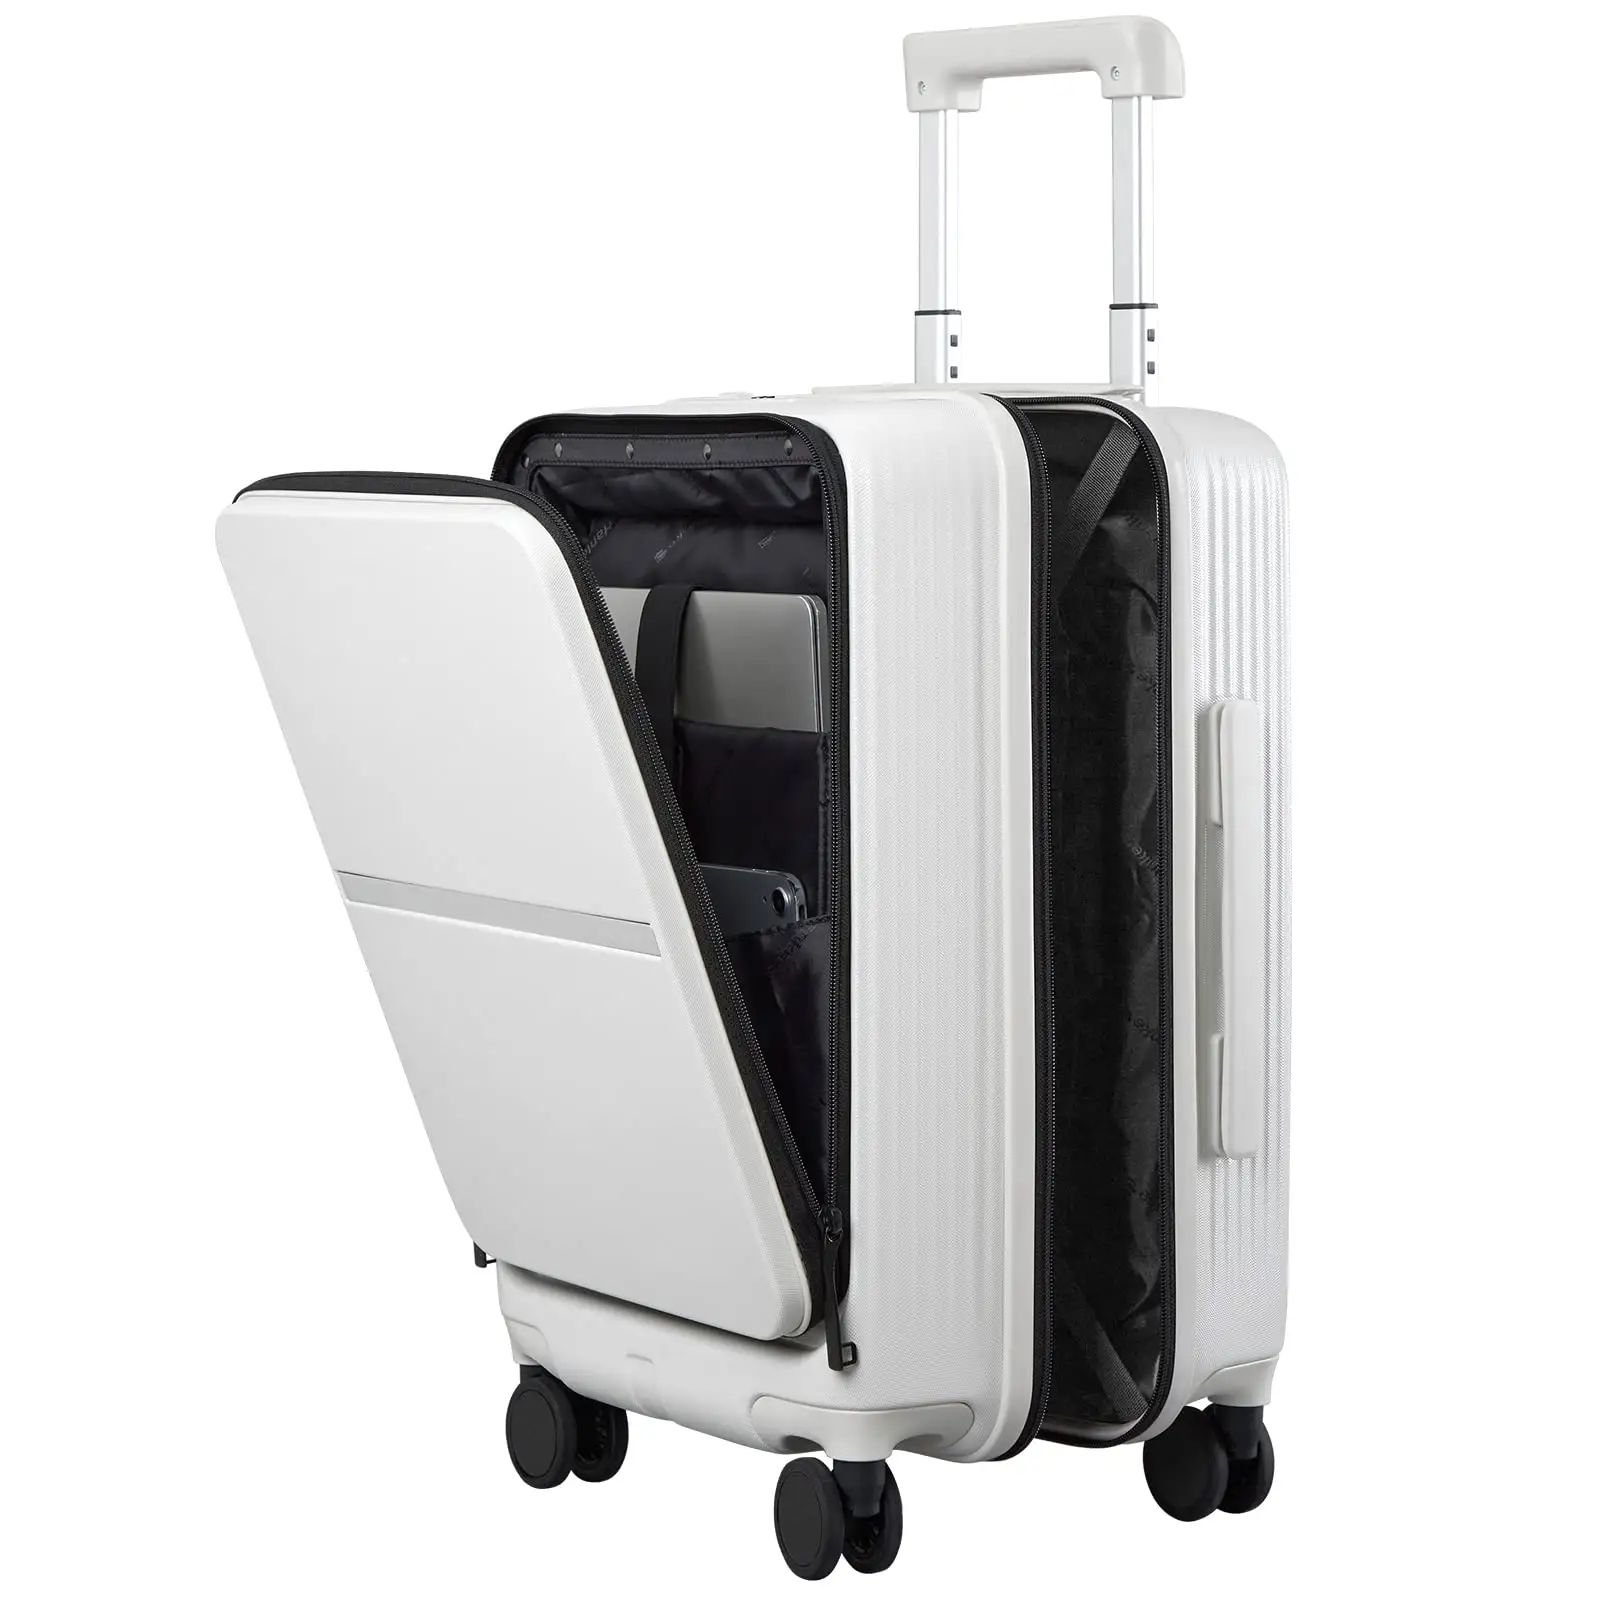 Bagagem com bolso frontal, 20 "PC Hard Case Malas com Spinner Wheels & TSA Lock, bagagem de rolamento para viagens e viagem curta (Gr